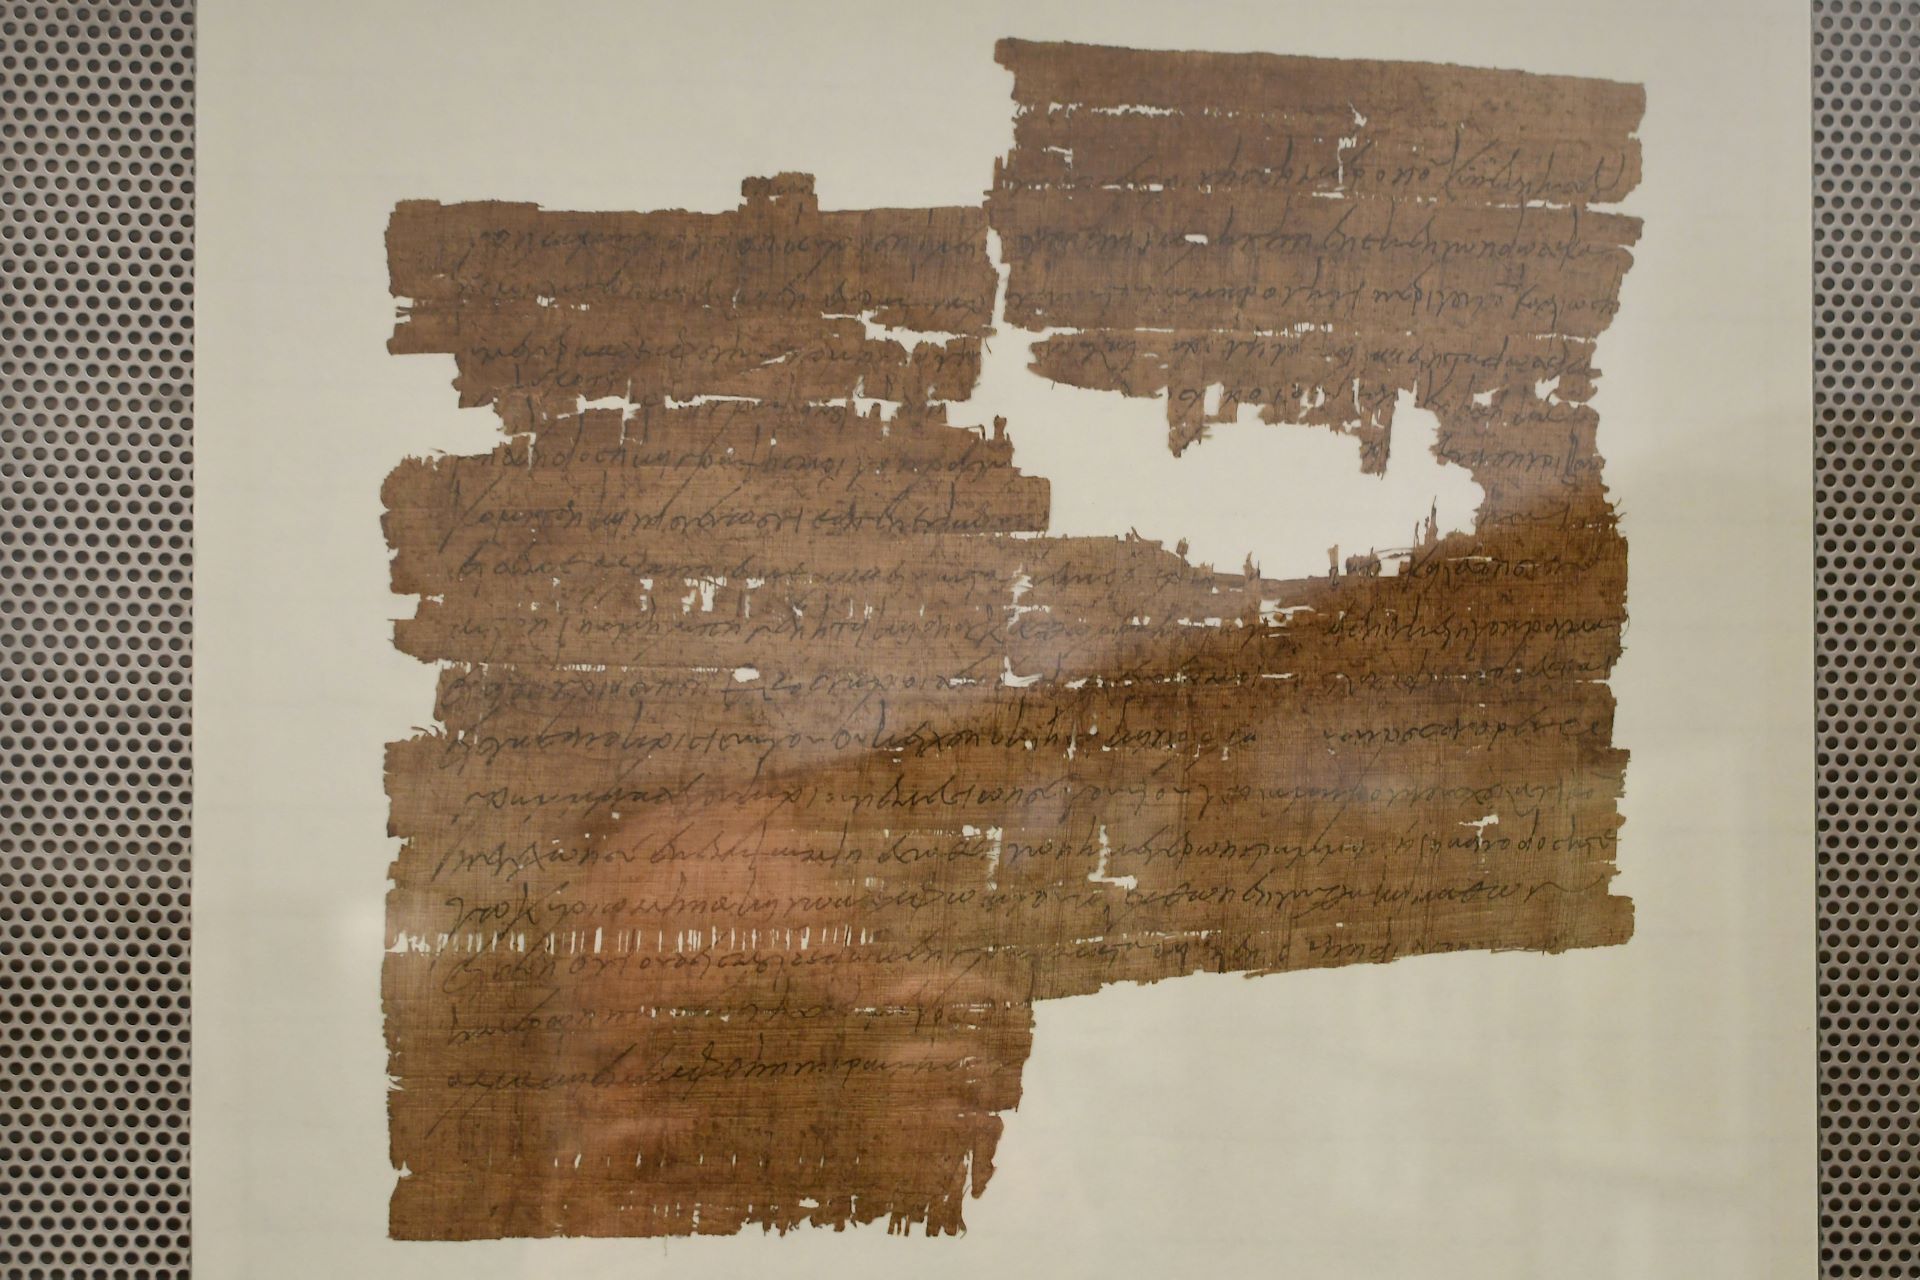 blog:2018-11-17-texte-aus-ferner-zeit:2018-11-17-wien-papyrusmuseum-126b.jpg